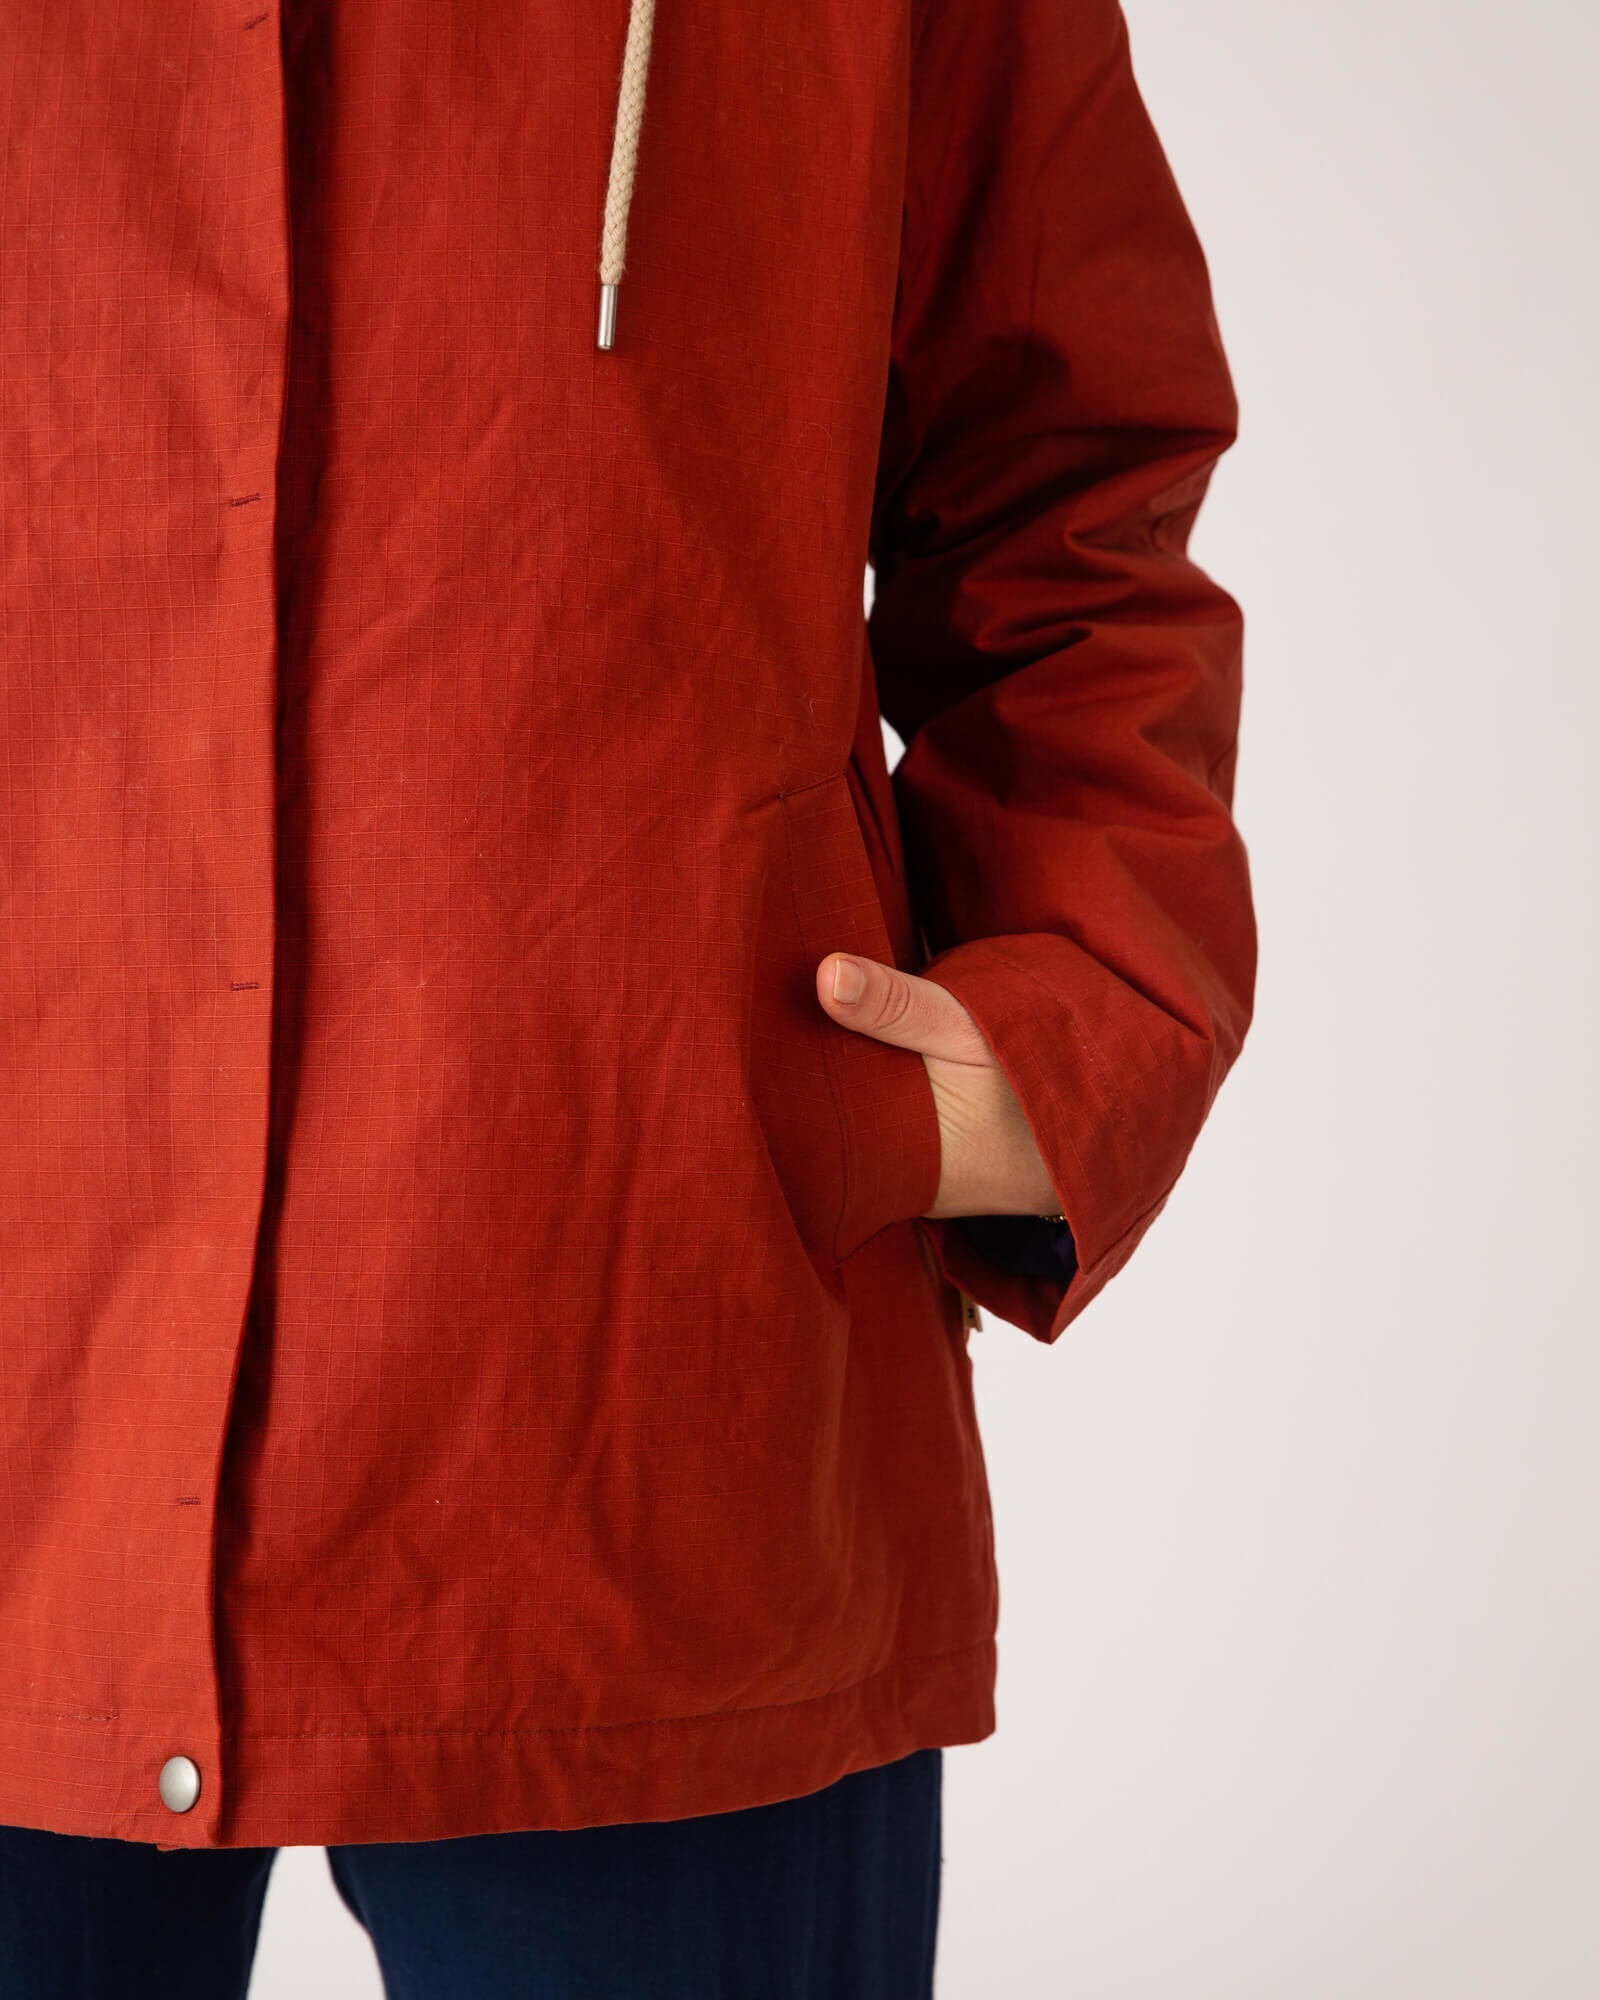 Brique de veste cirée rouge en coton biologique de Matona